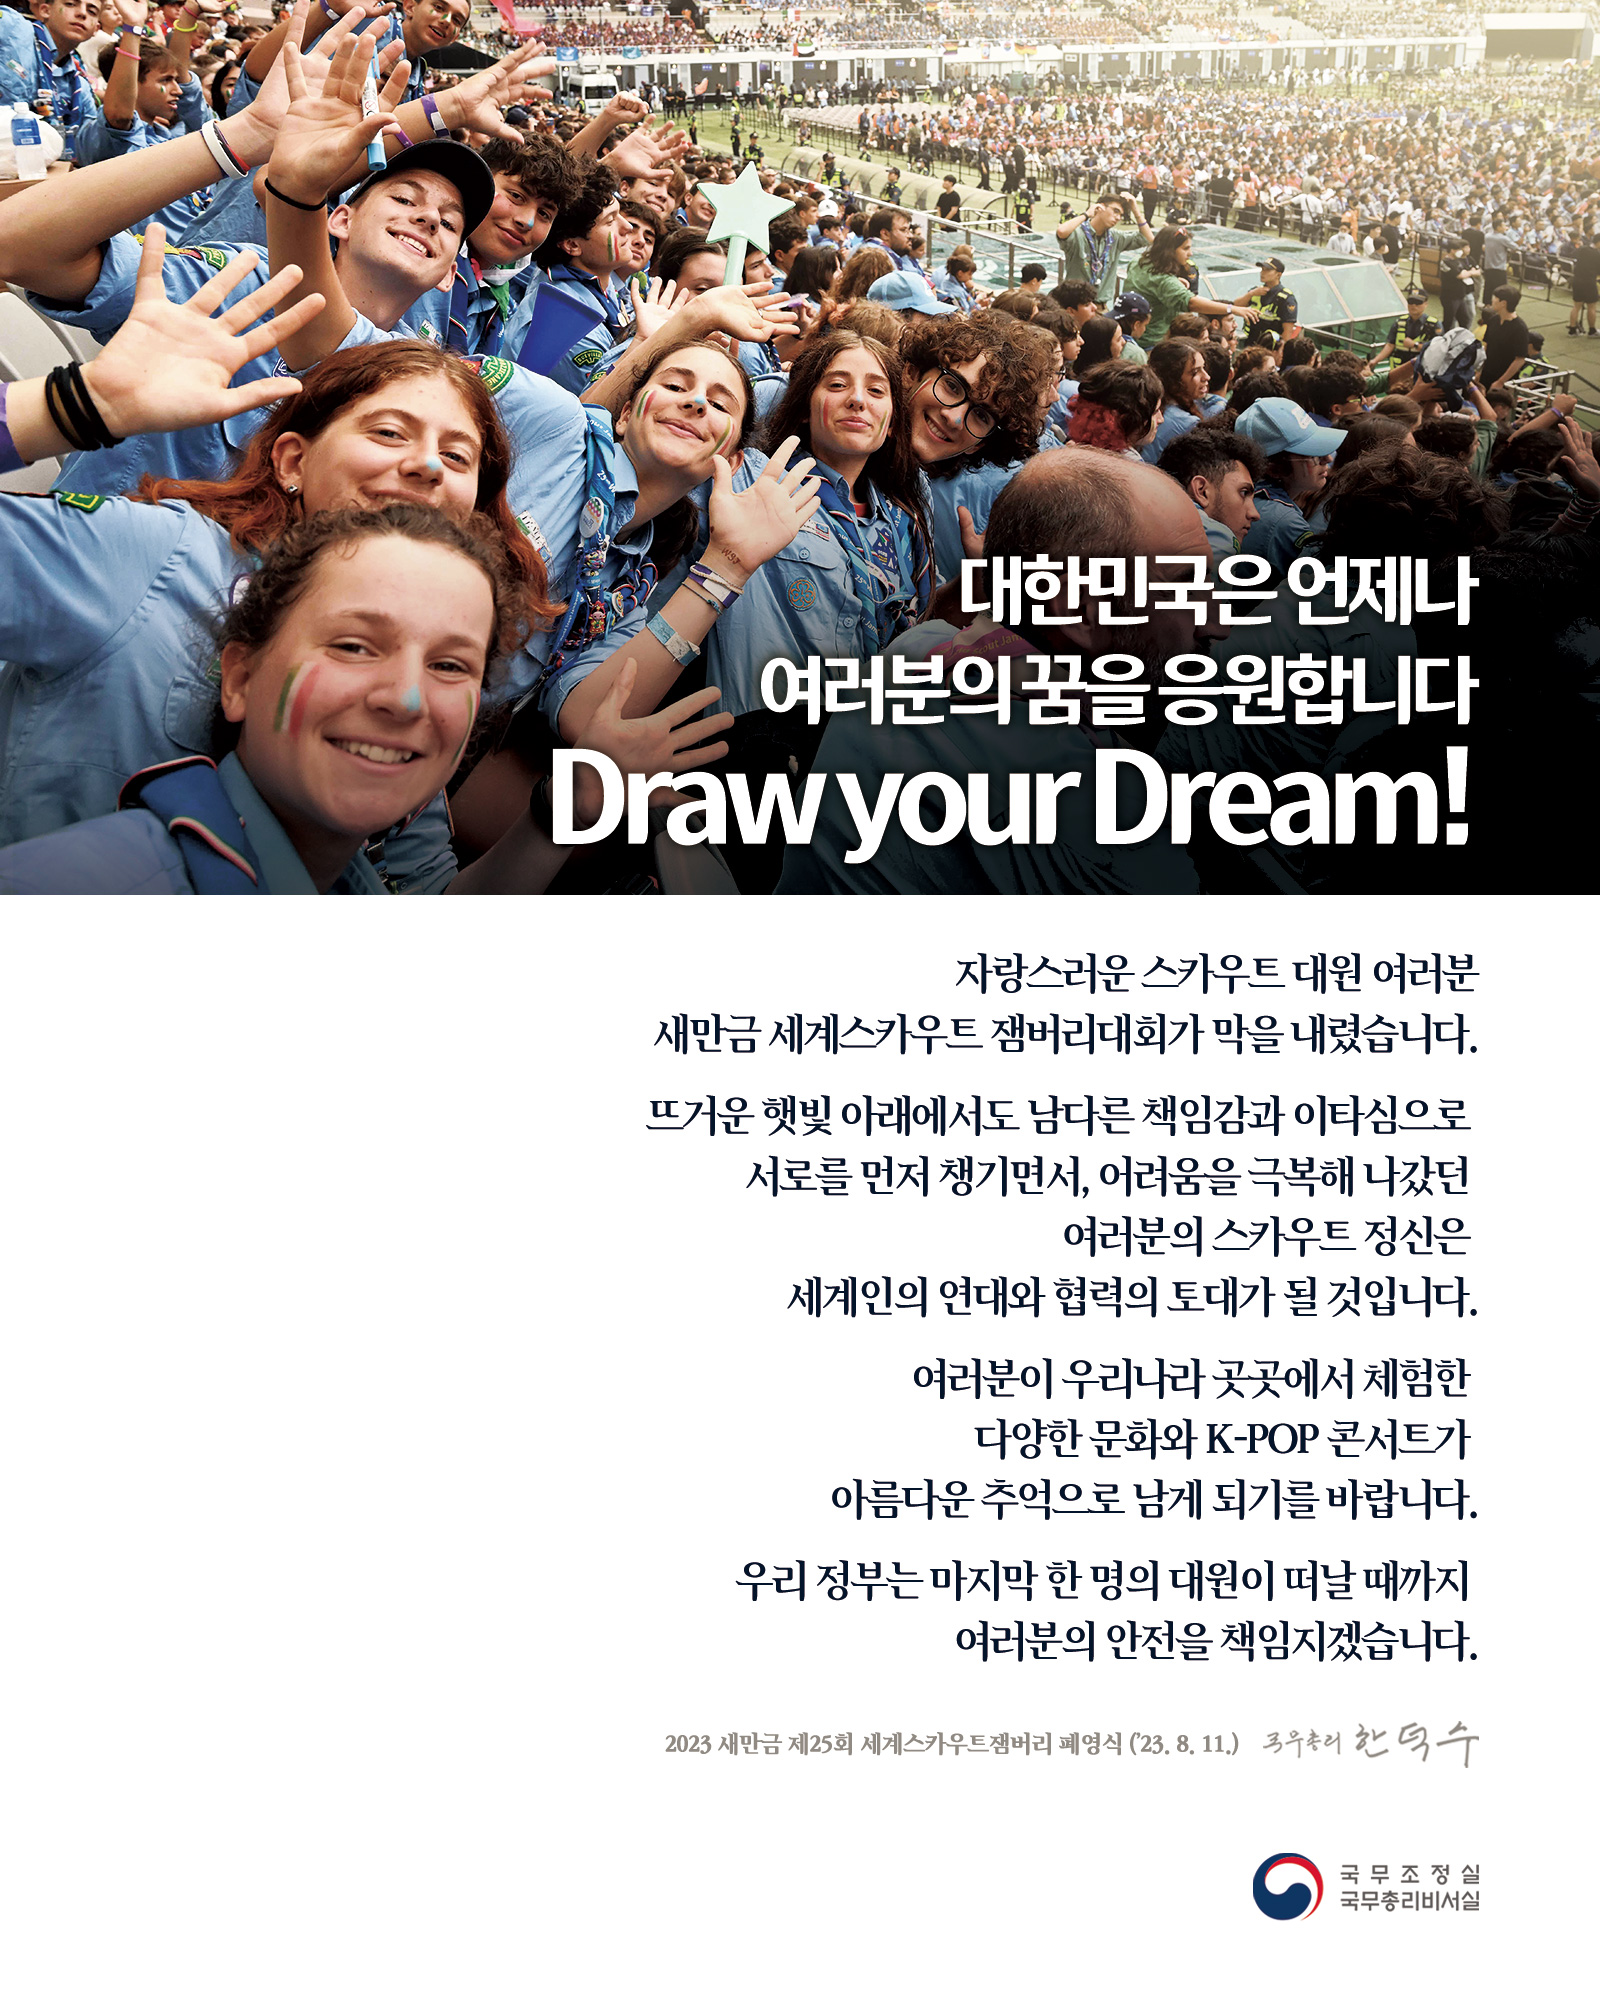 대한민국은 언제나 여러분의 꿈을 응원합니다